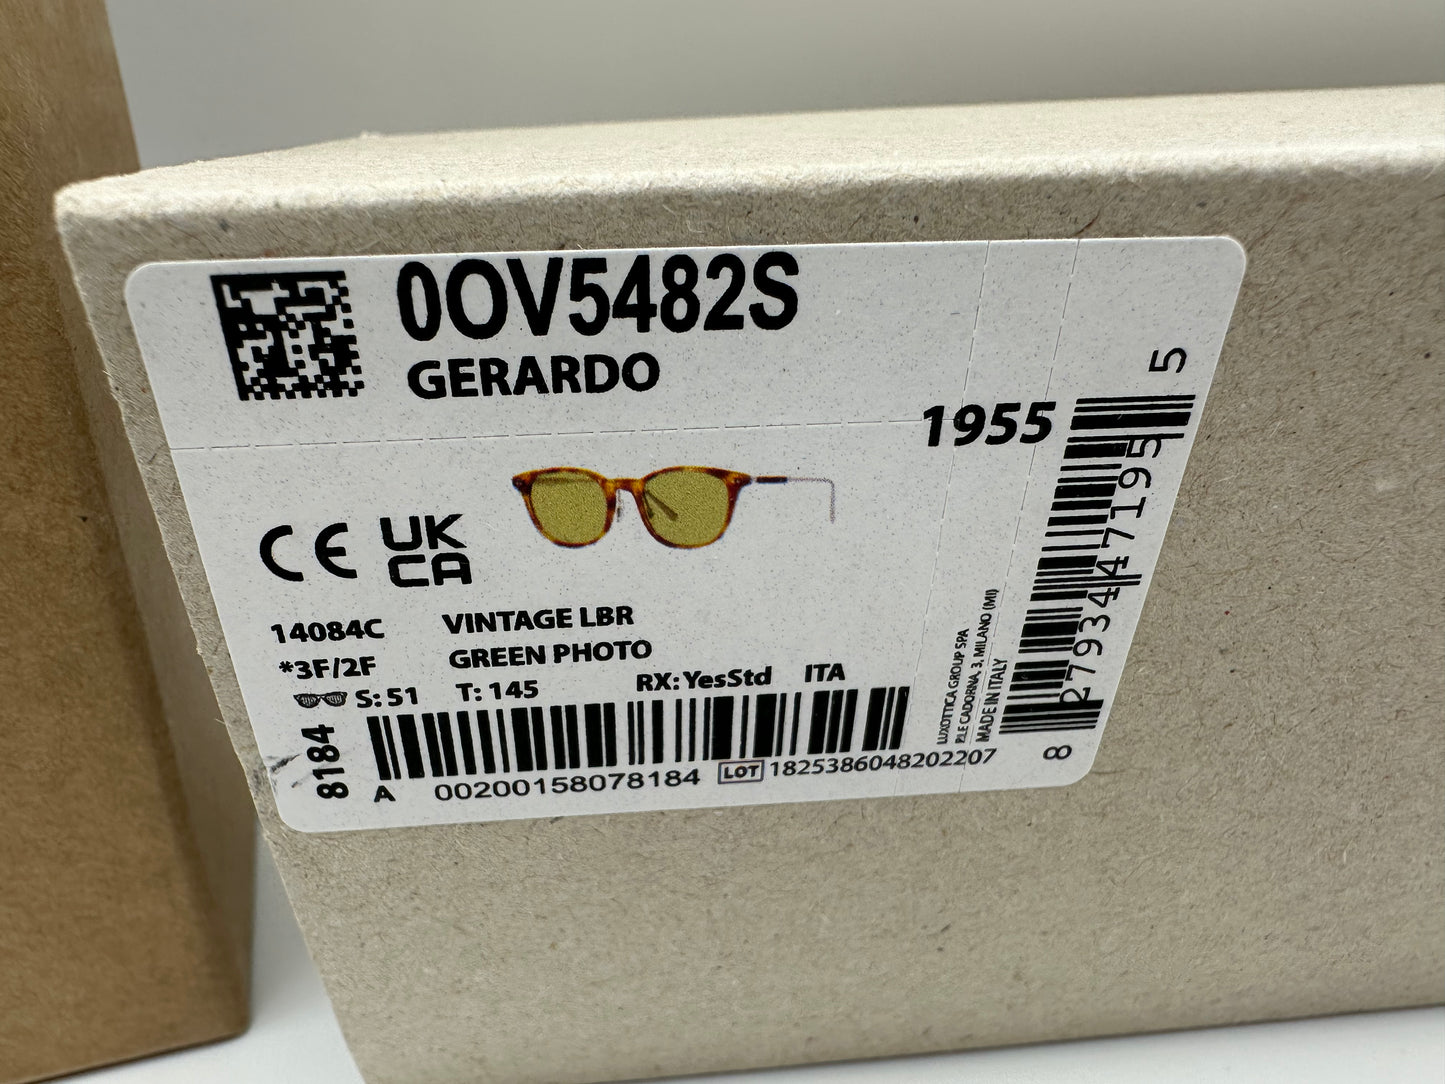 Oliver Peoples Gerardo OV5482S-14084C Vintage LBR/Brushed Silver 51mm Green Photochromic Vintage Sunglasses